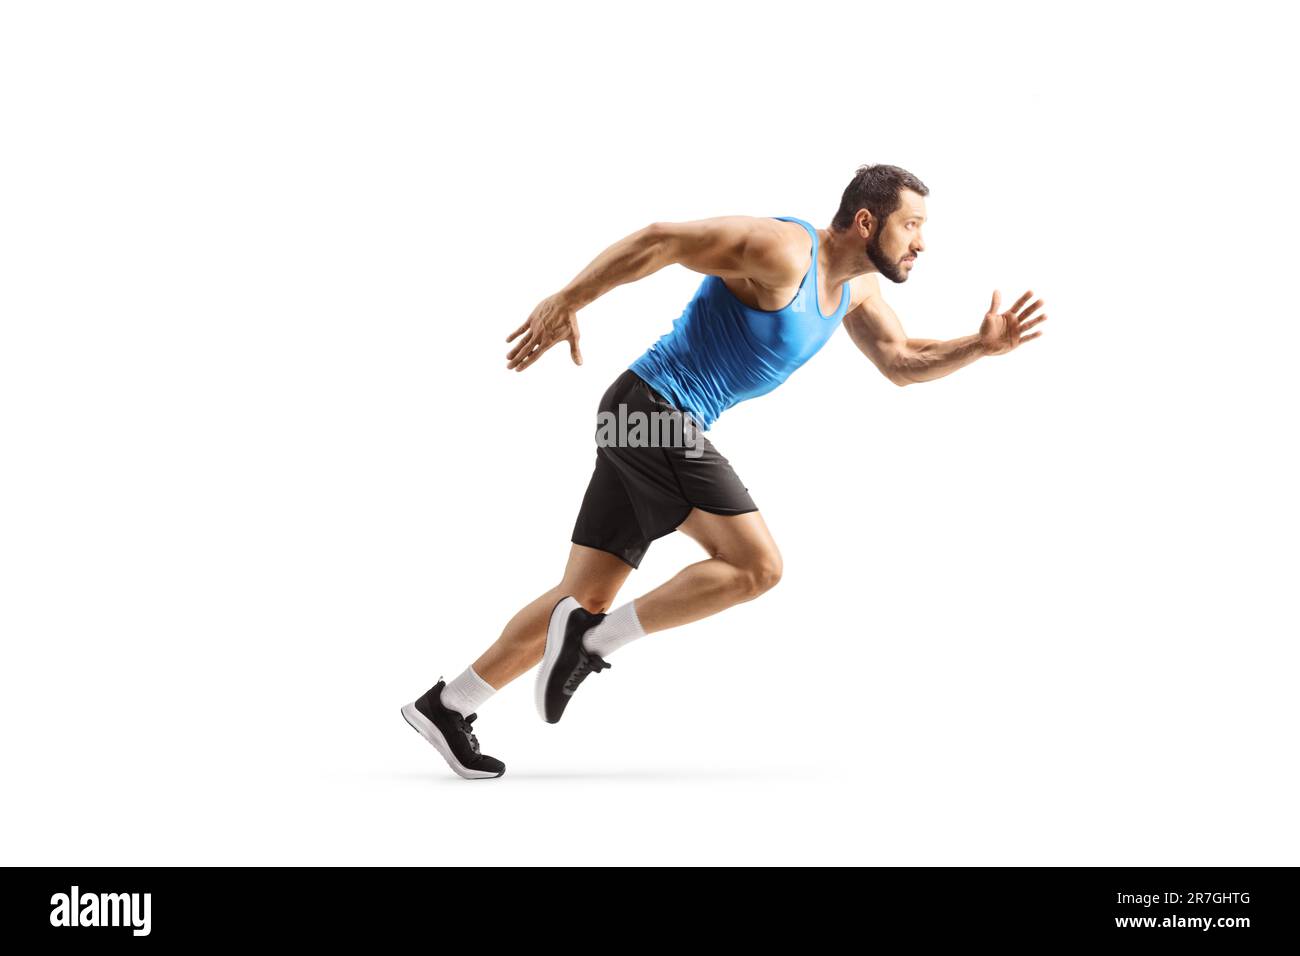 Foto a profilo completo di un atleta maschile in forma che corre isolato velocemente su sfondo bianco Foto Stock